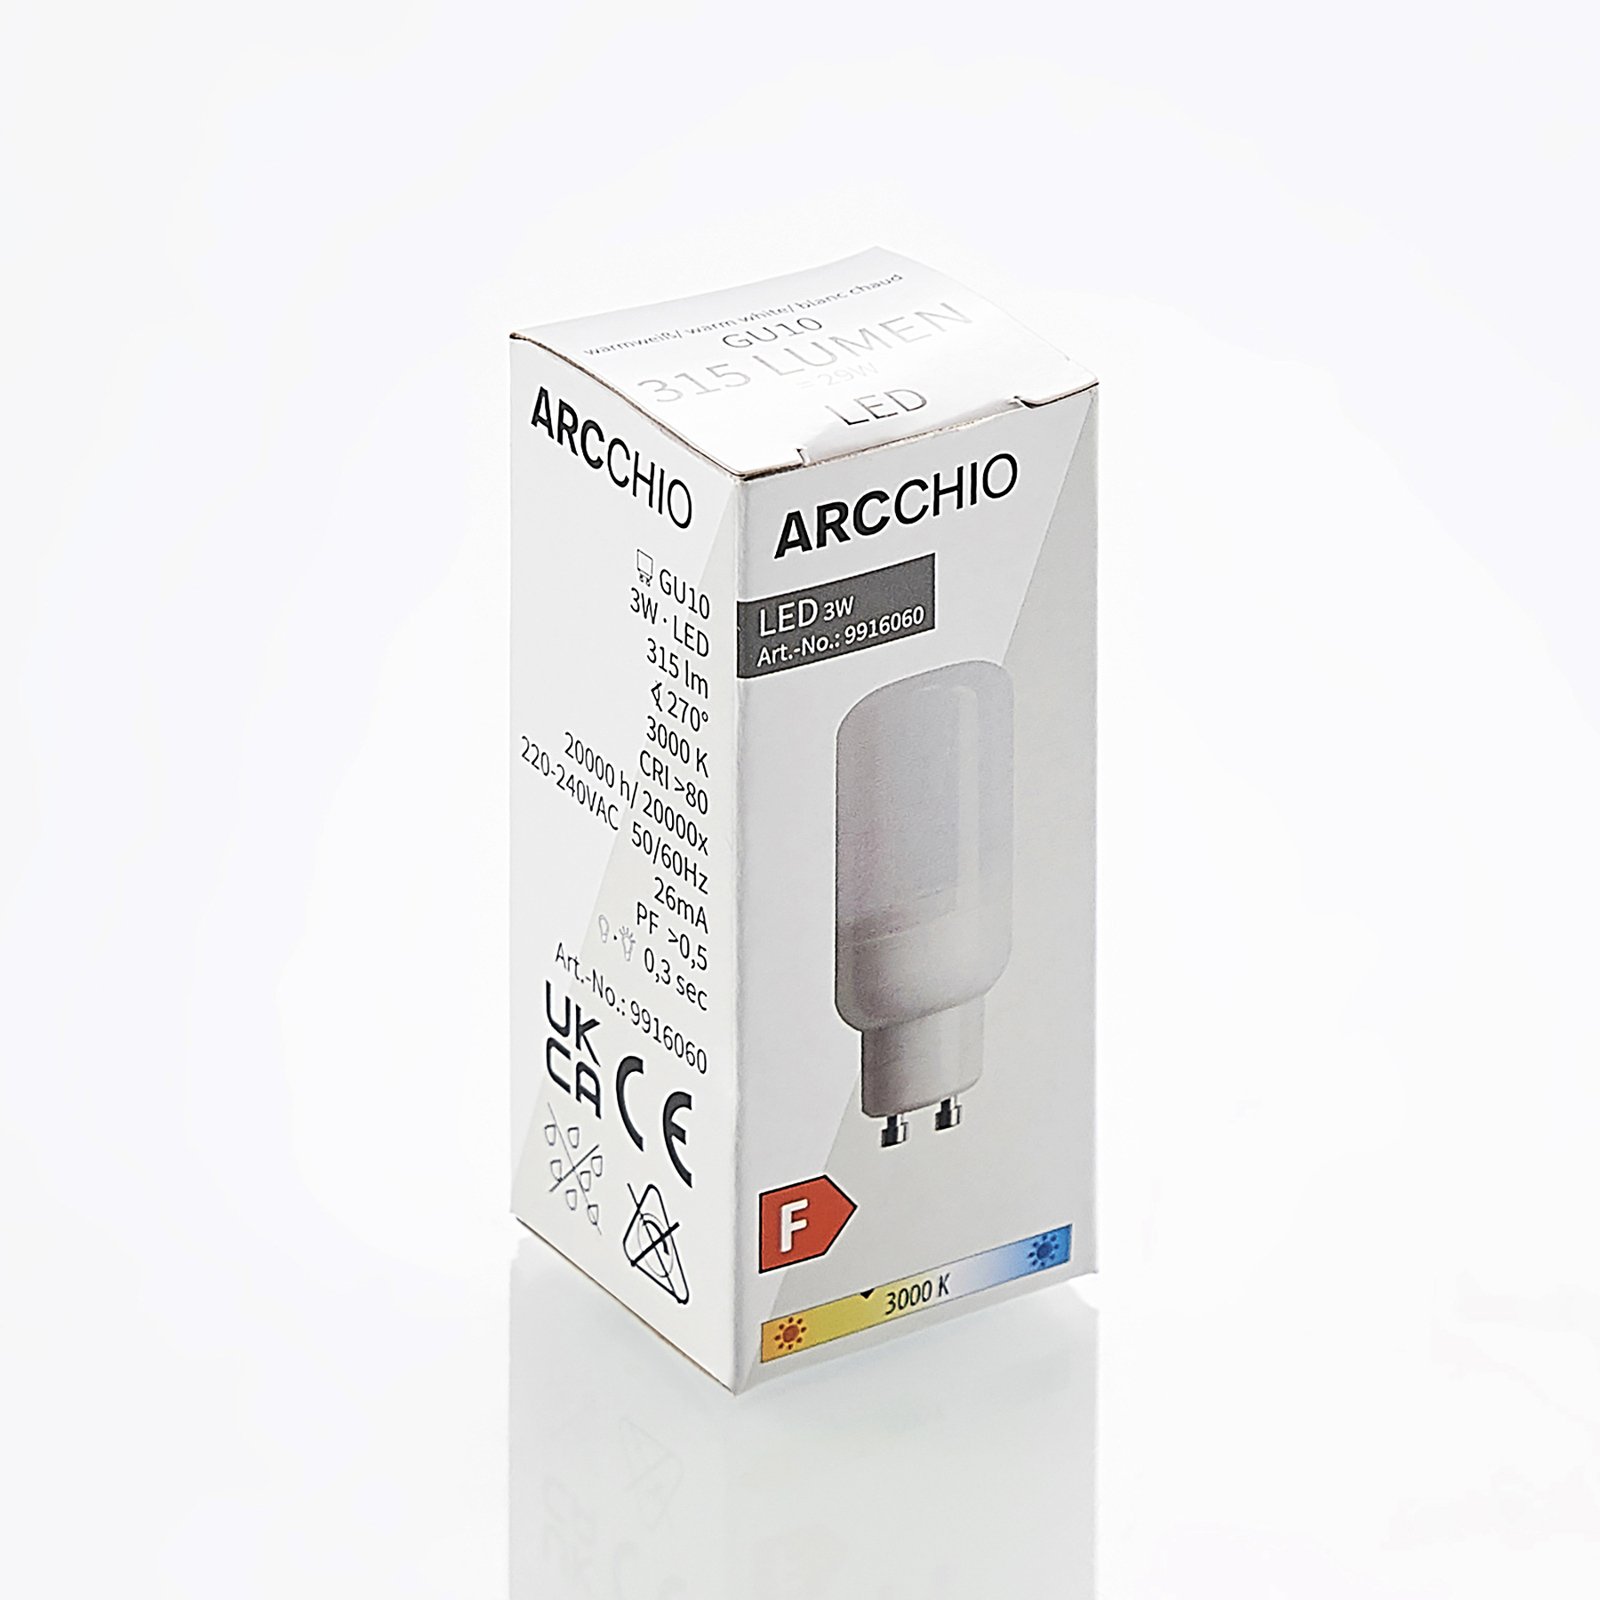 Arcchio LED trubková žárovka GU10 3W 3 000K 2ks